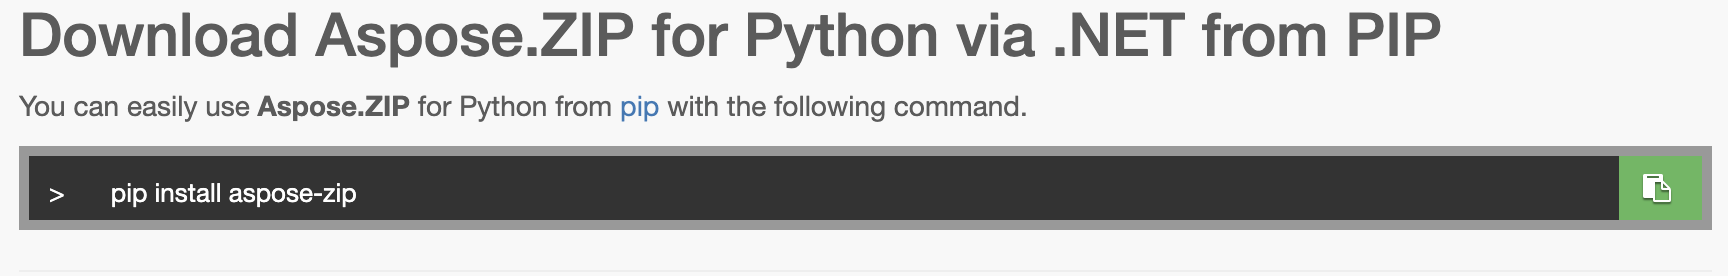 Python-Komprimierungsbibliothek